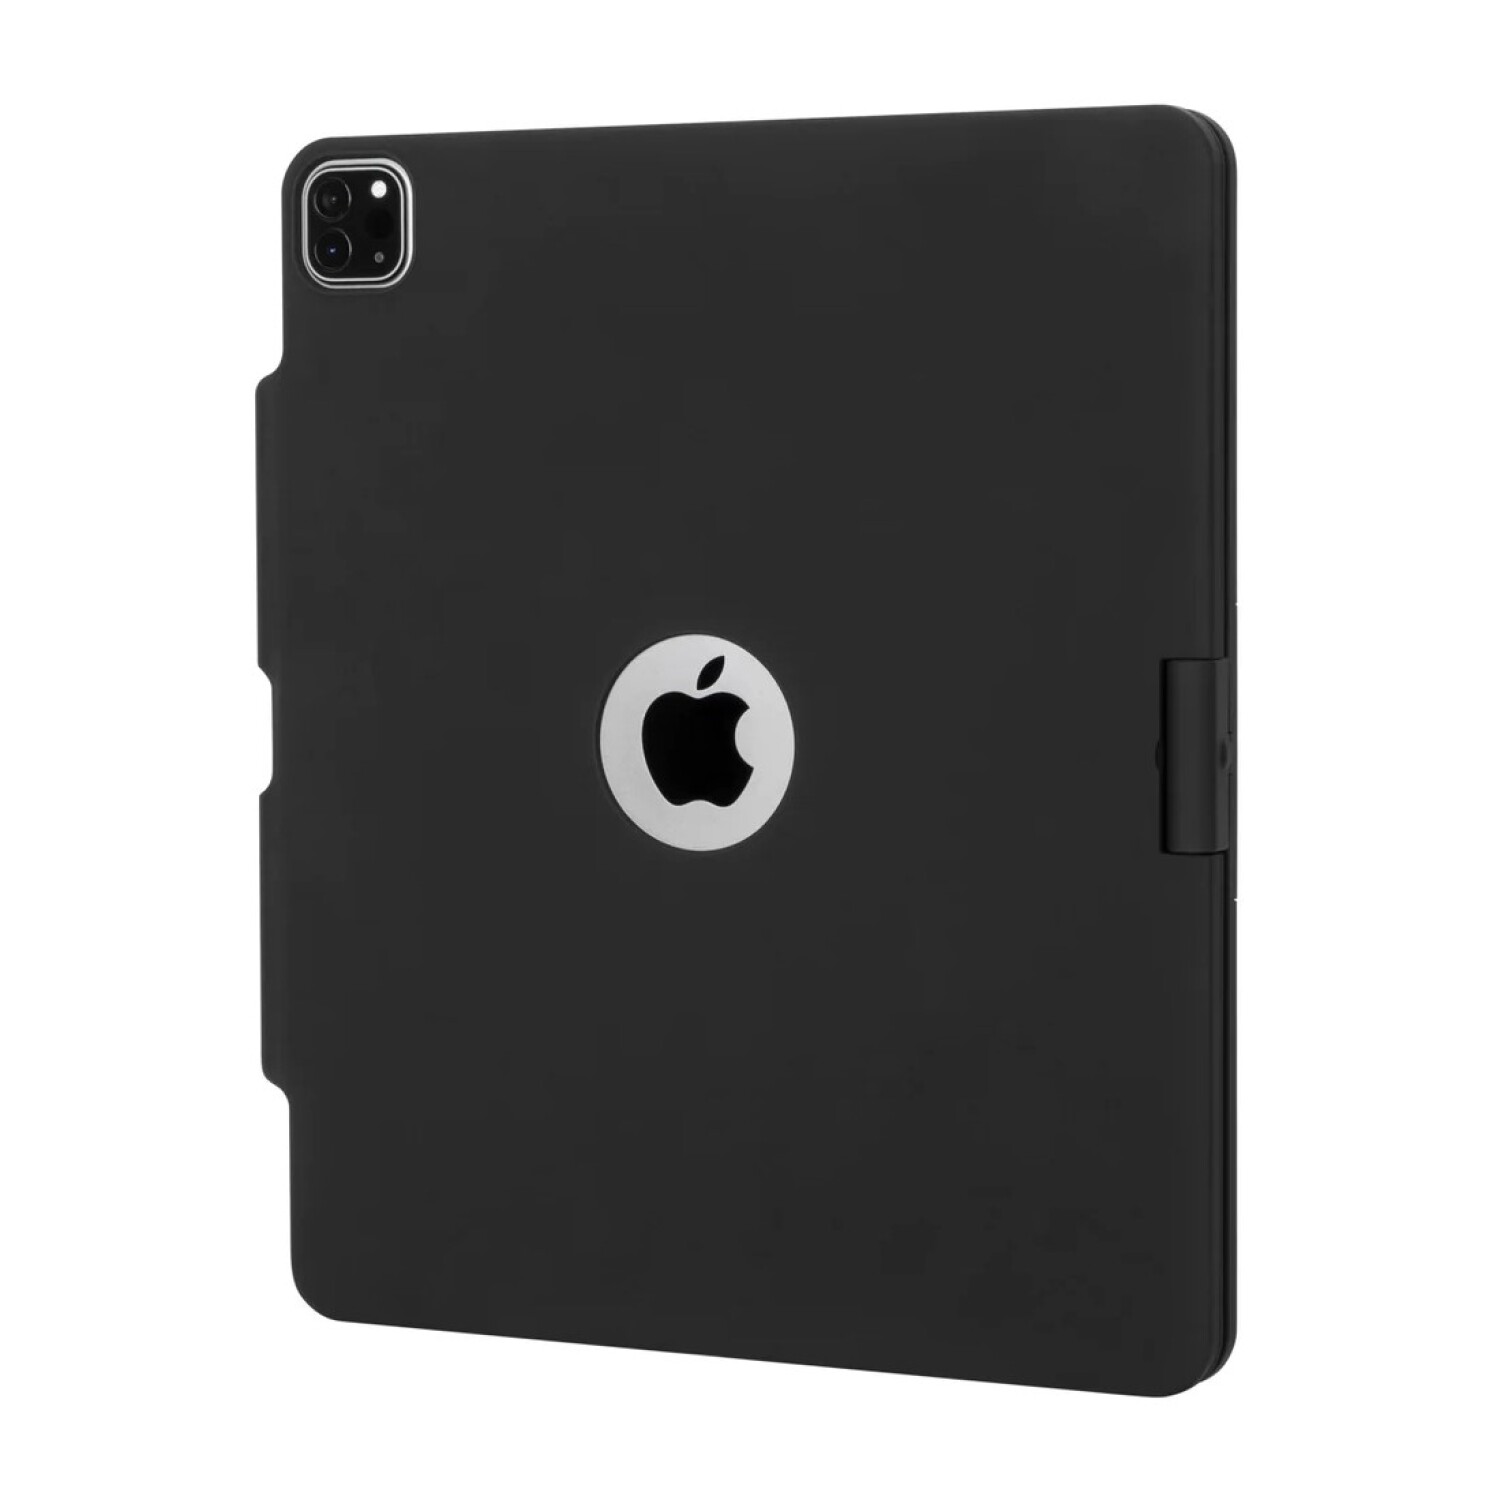 Estuche Negro con Teclado – iPad Pro 2020 12.9″ – iCase Uruguay